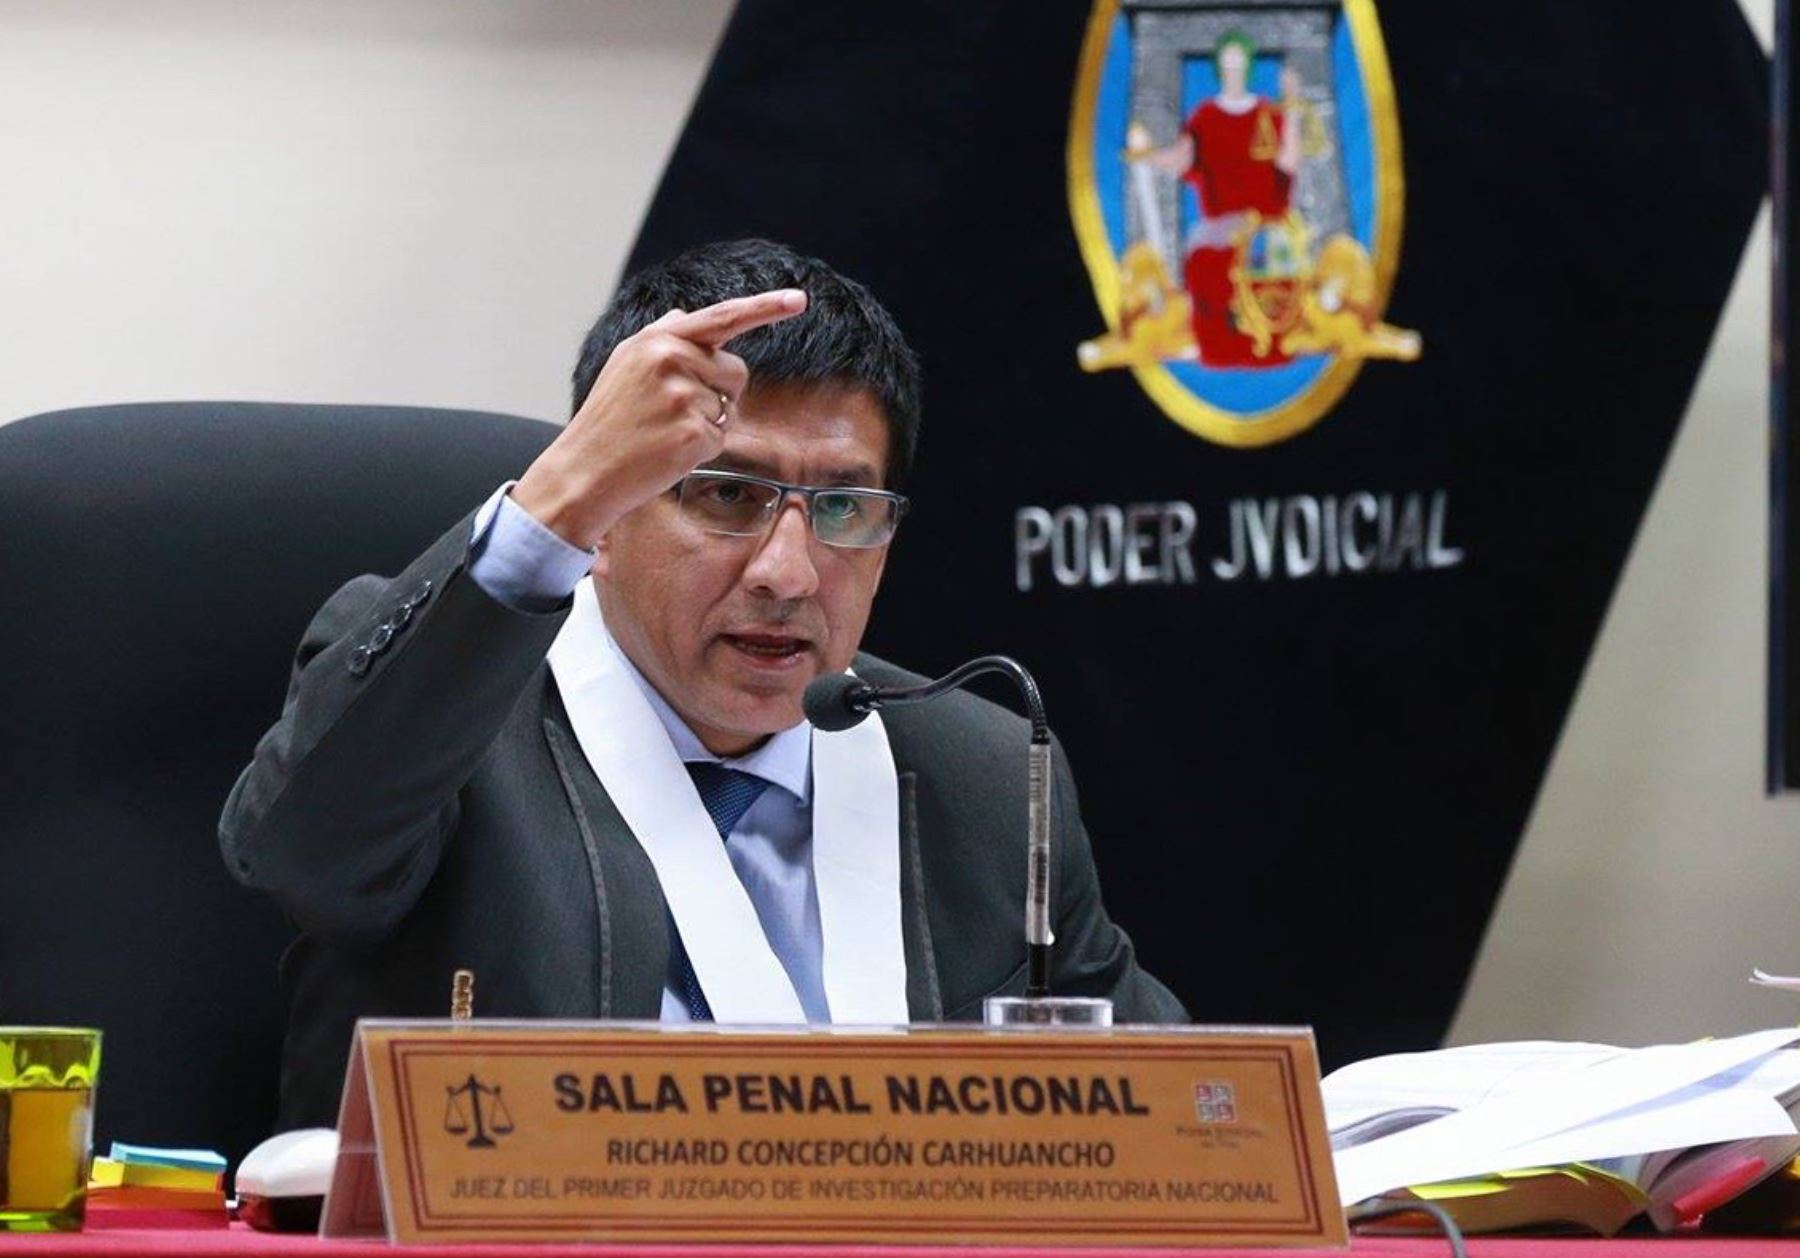 Juez Concepción Carhuancho: “Es necesario trabajar por instituciones del Estado”